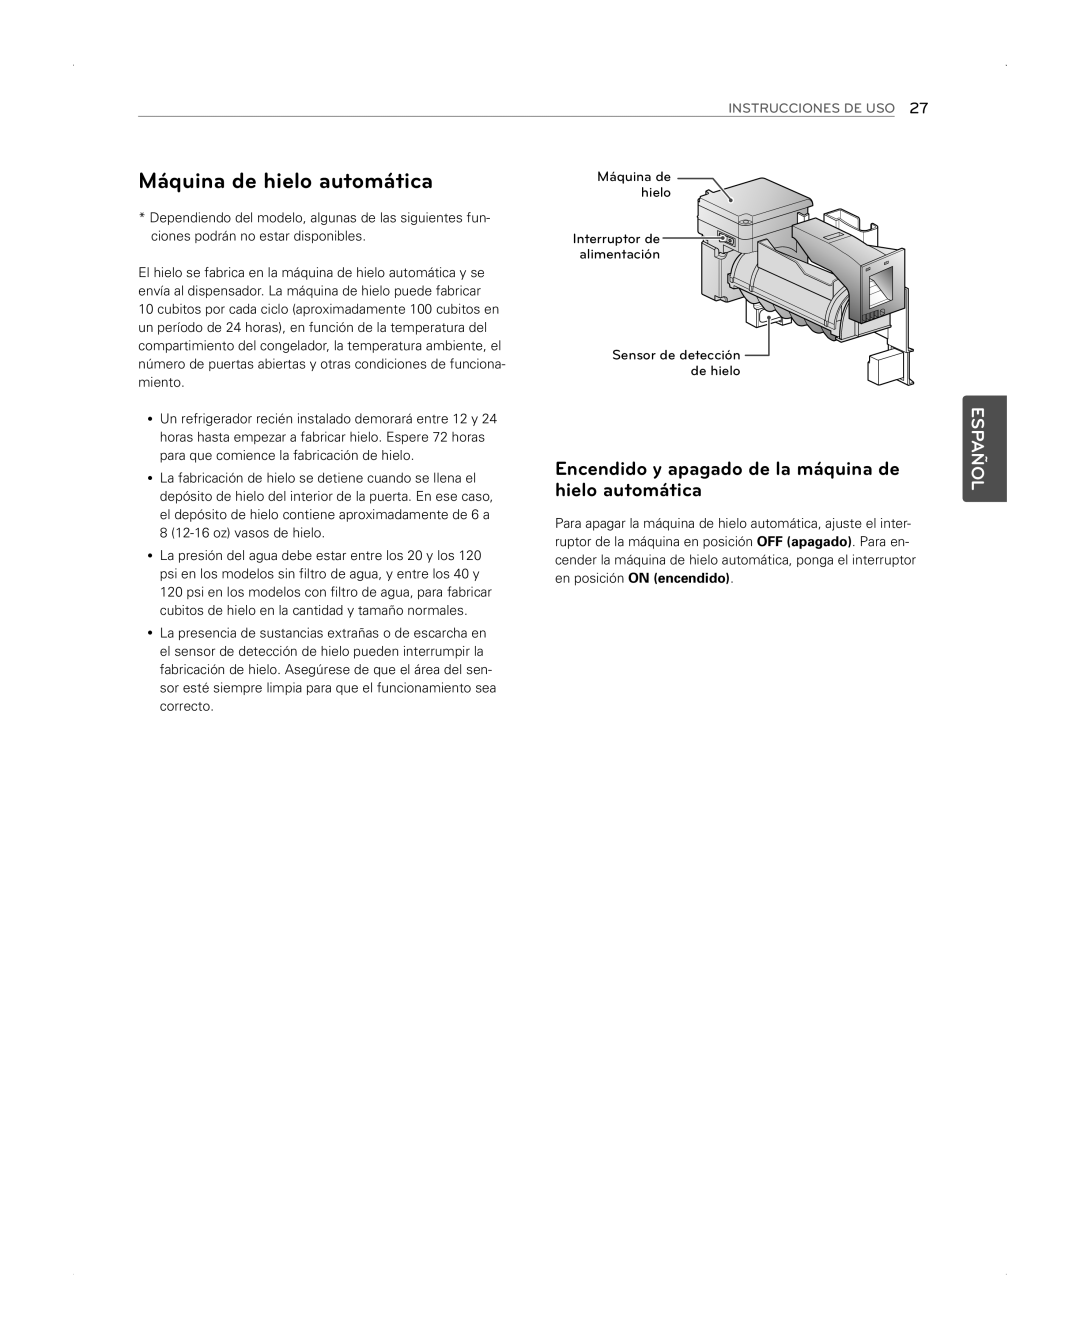 LG Electronics LFX31945ST Máquina de hielo automática, Encendido y apagado de la máquina de, Español, Instrucciones De Uso 